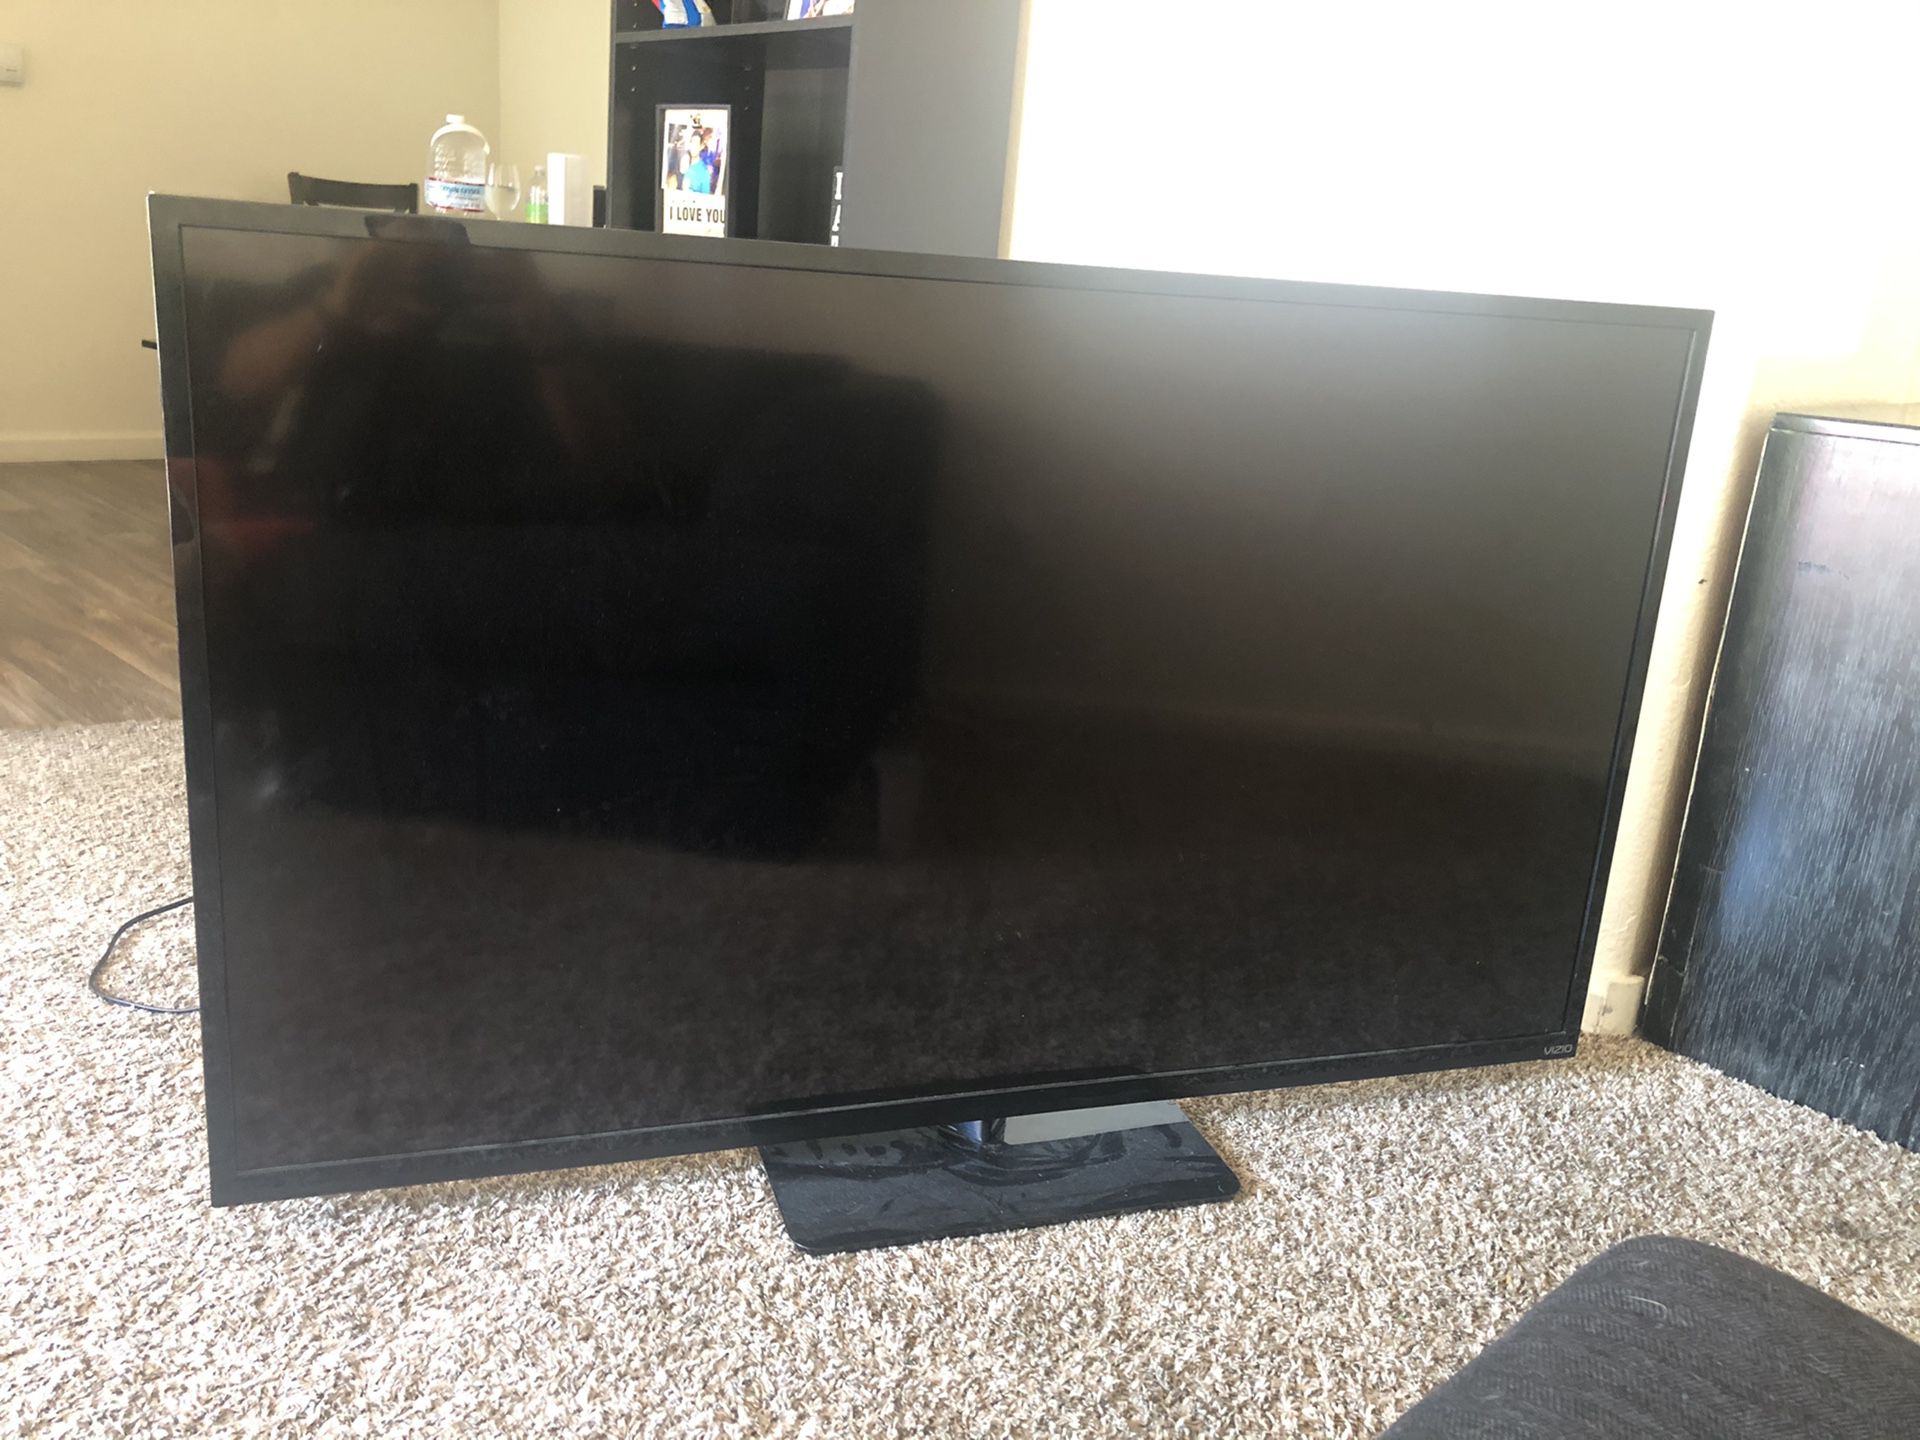 Vizio 60 inch tv